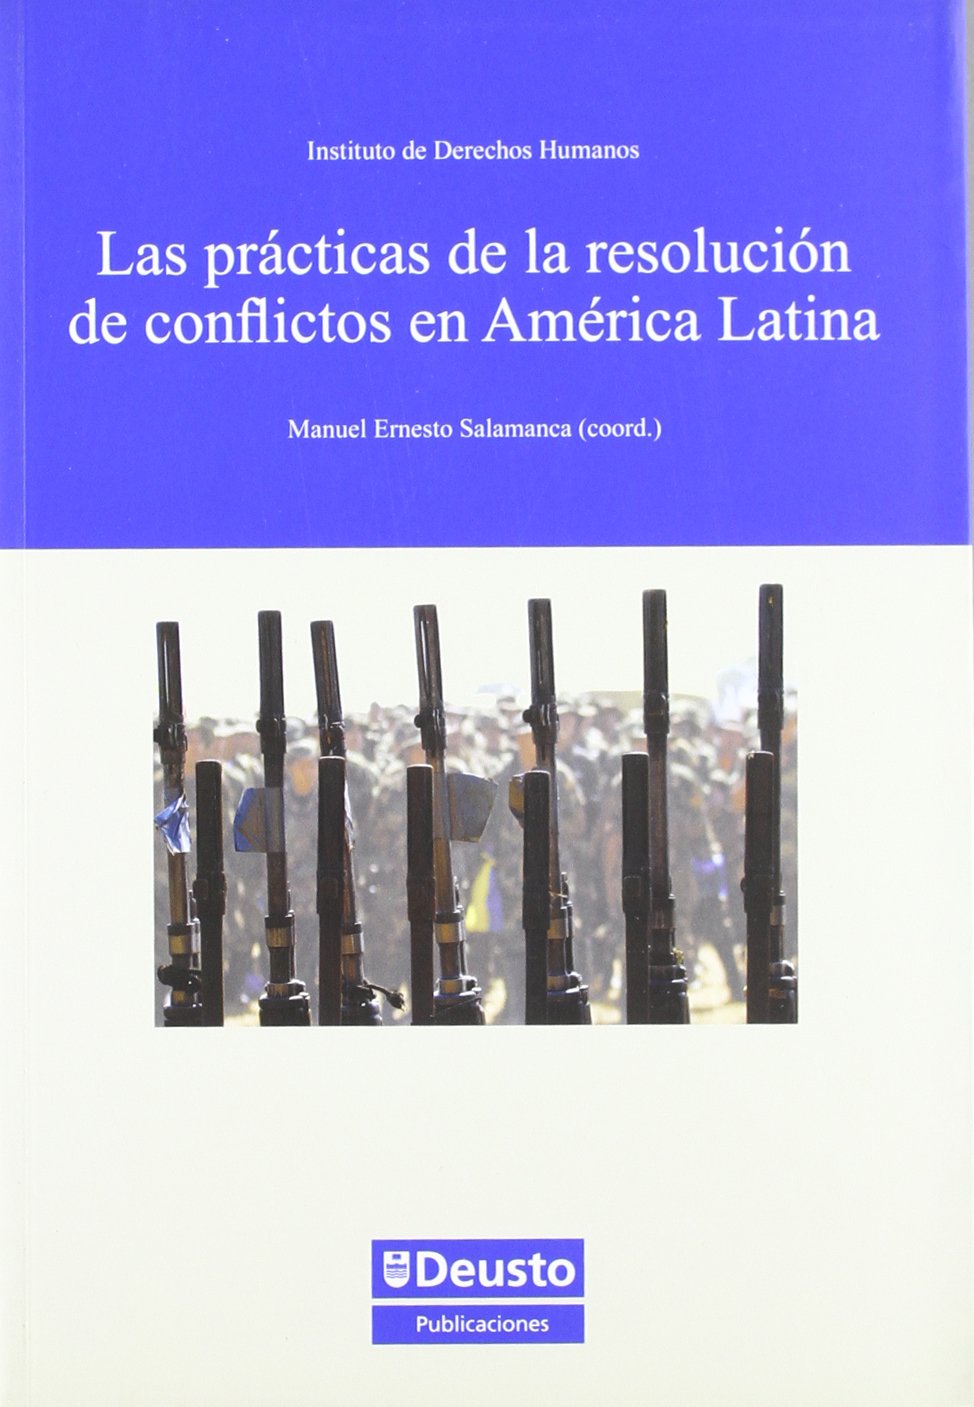 Imagen de portada del libro Las prácticas de la resolución de conflictos en América Latina